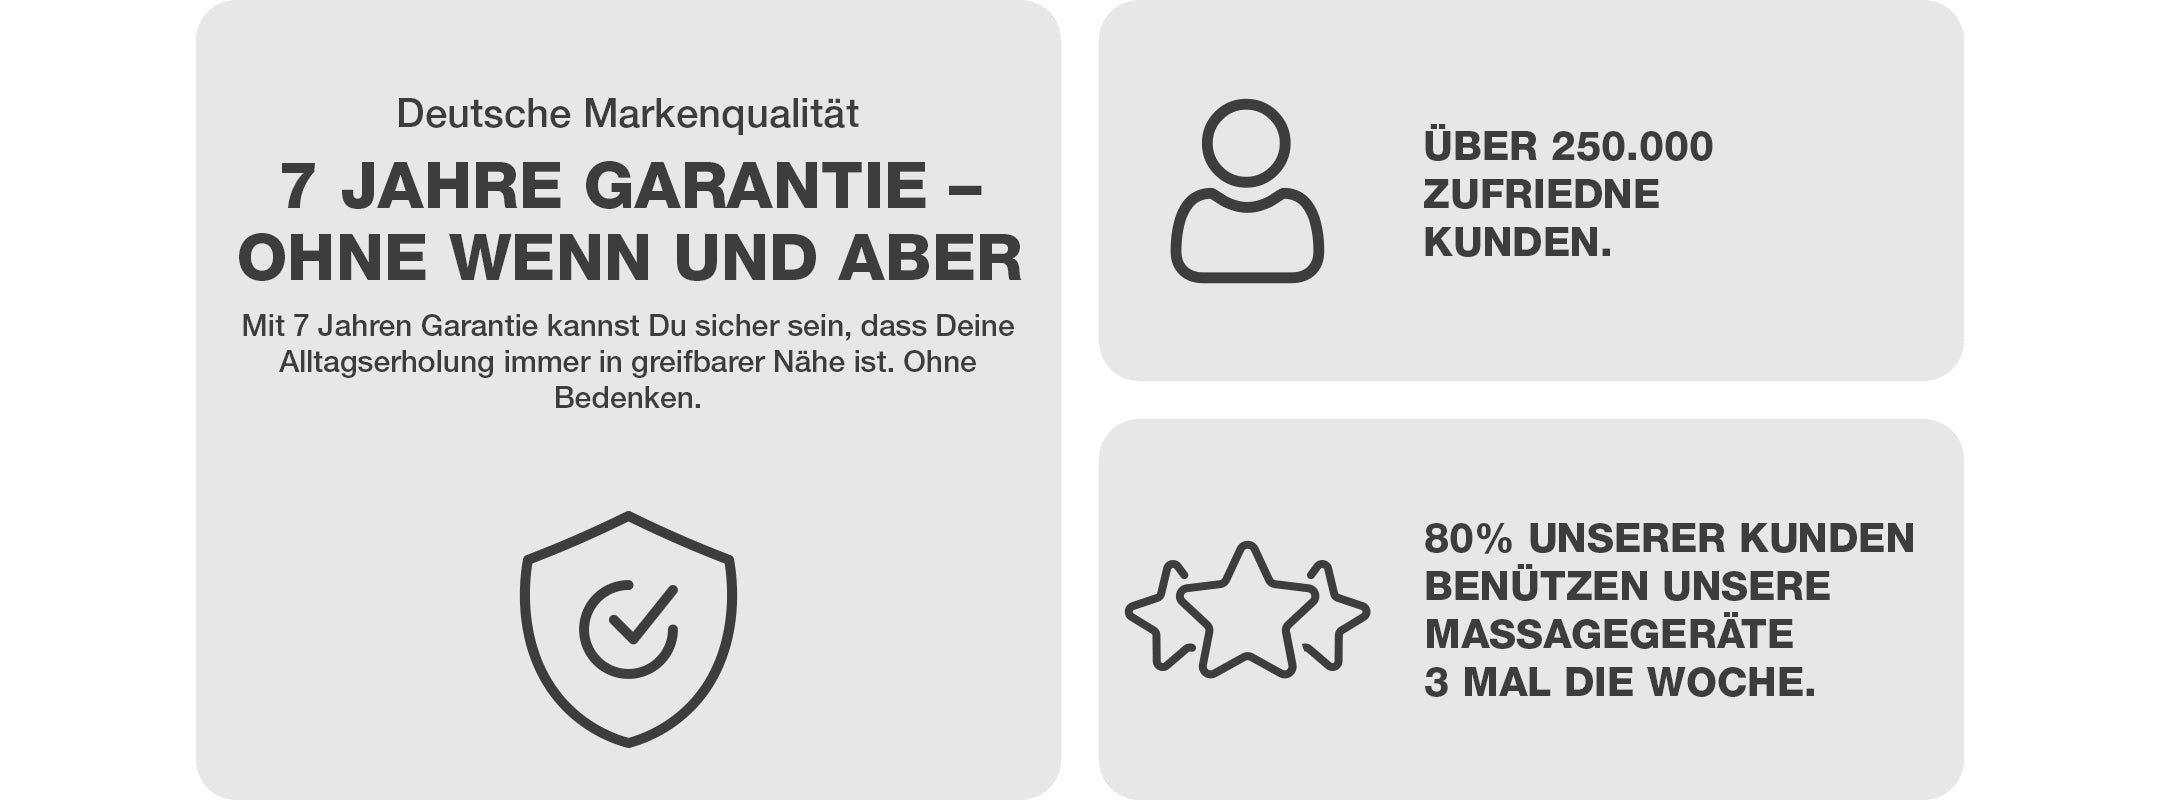 Klopfy: Deutsche Markenqualität mit 7 Jahren Garantie 